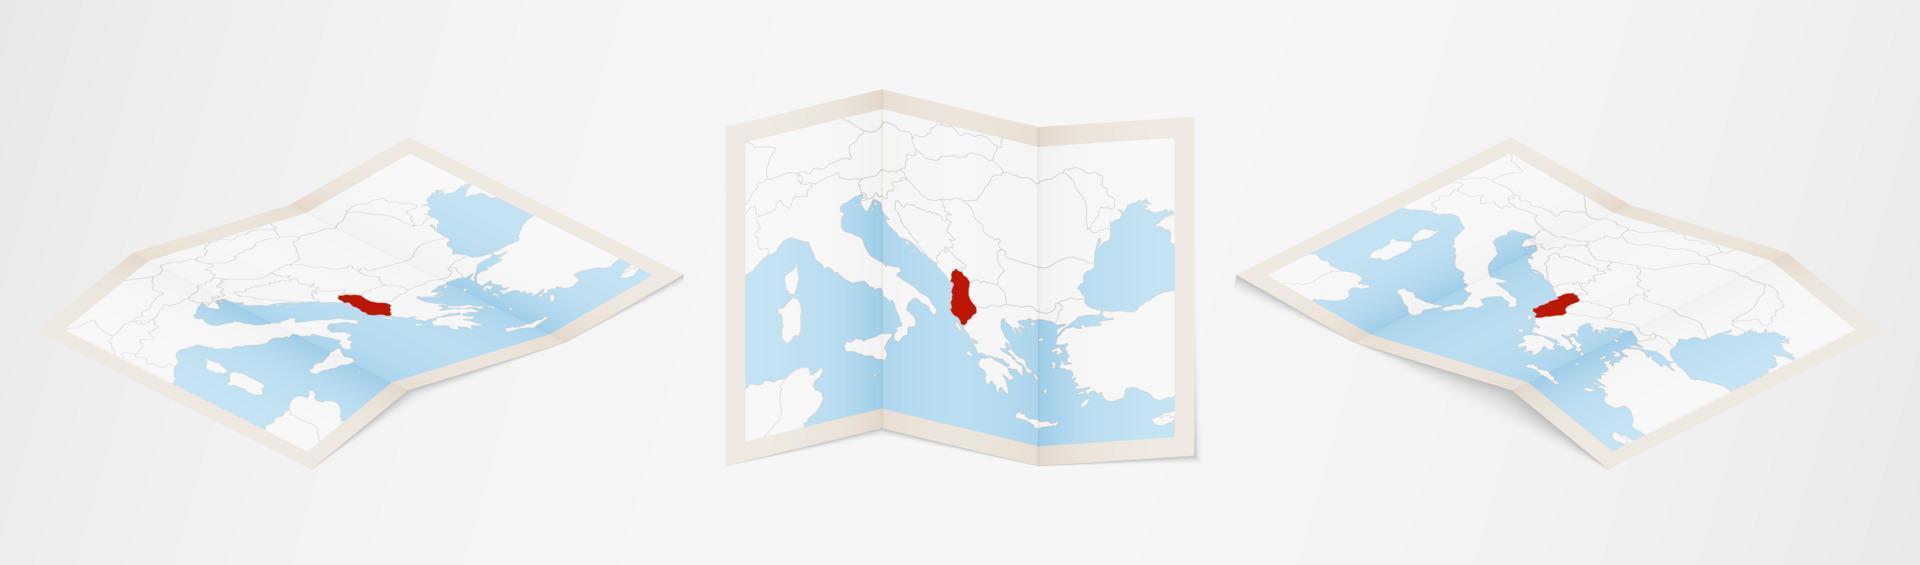 carte pliée de l'albanie en trois versions différentes. vecteur